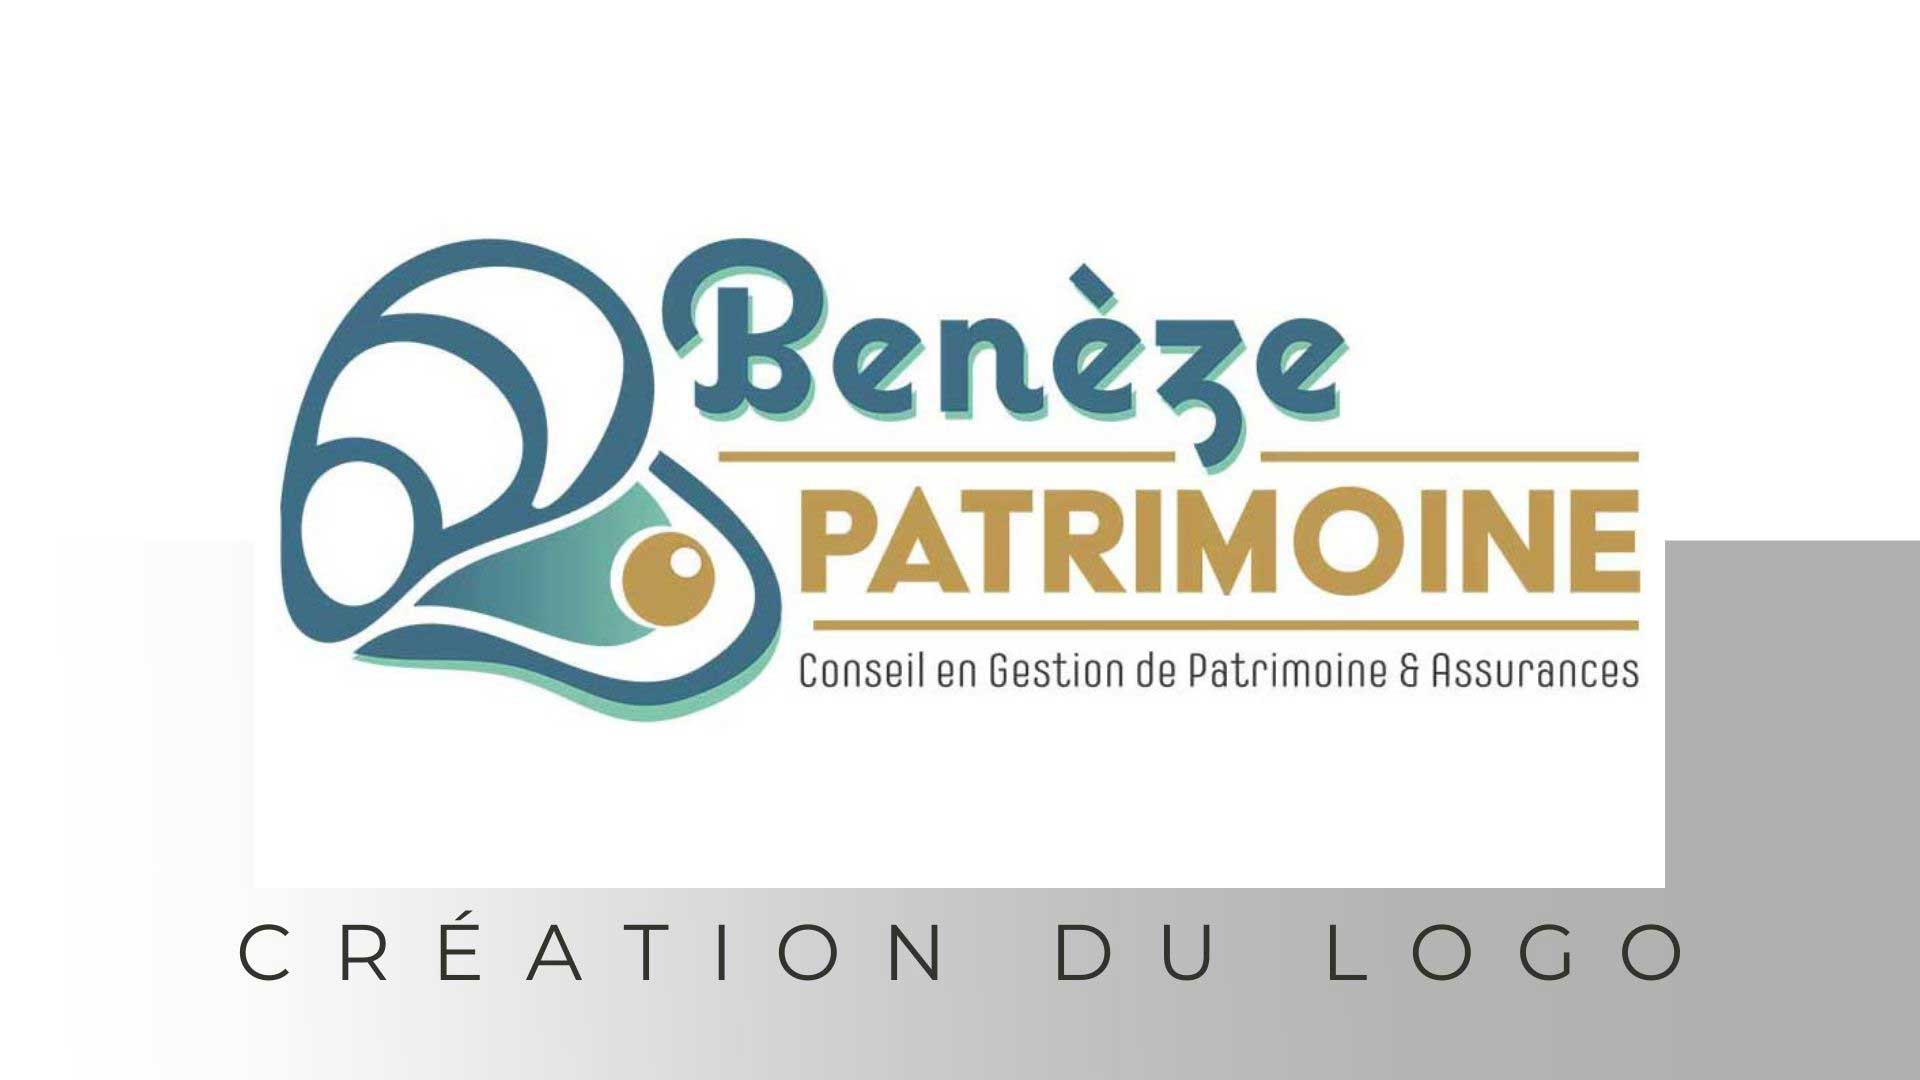 Bernezac communication création de logos et print charente maritime nouvelle aquitaine